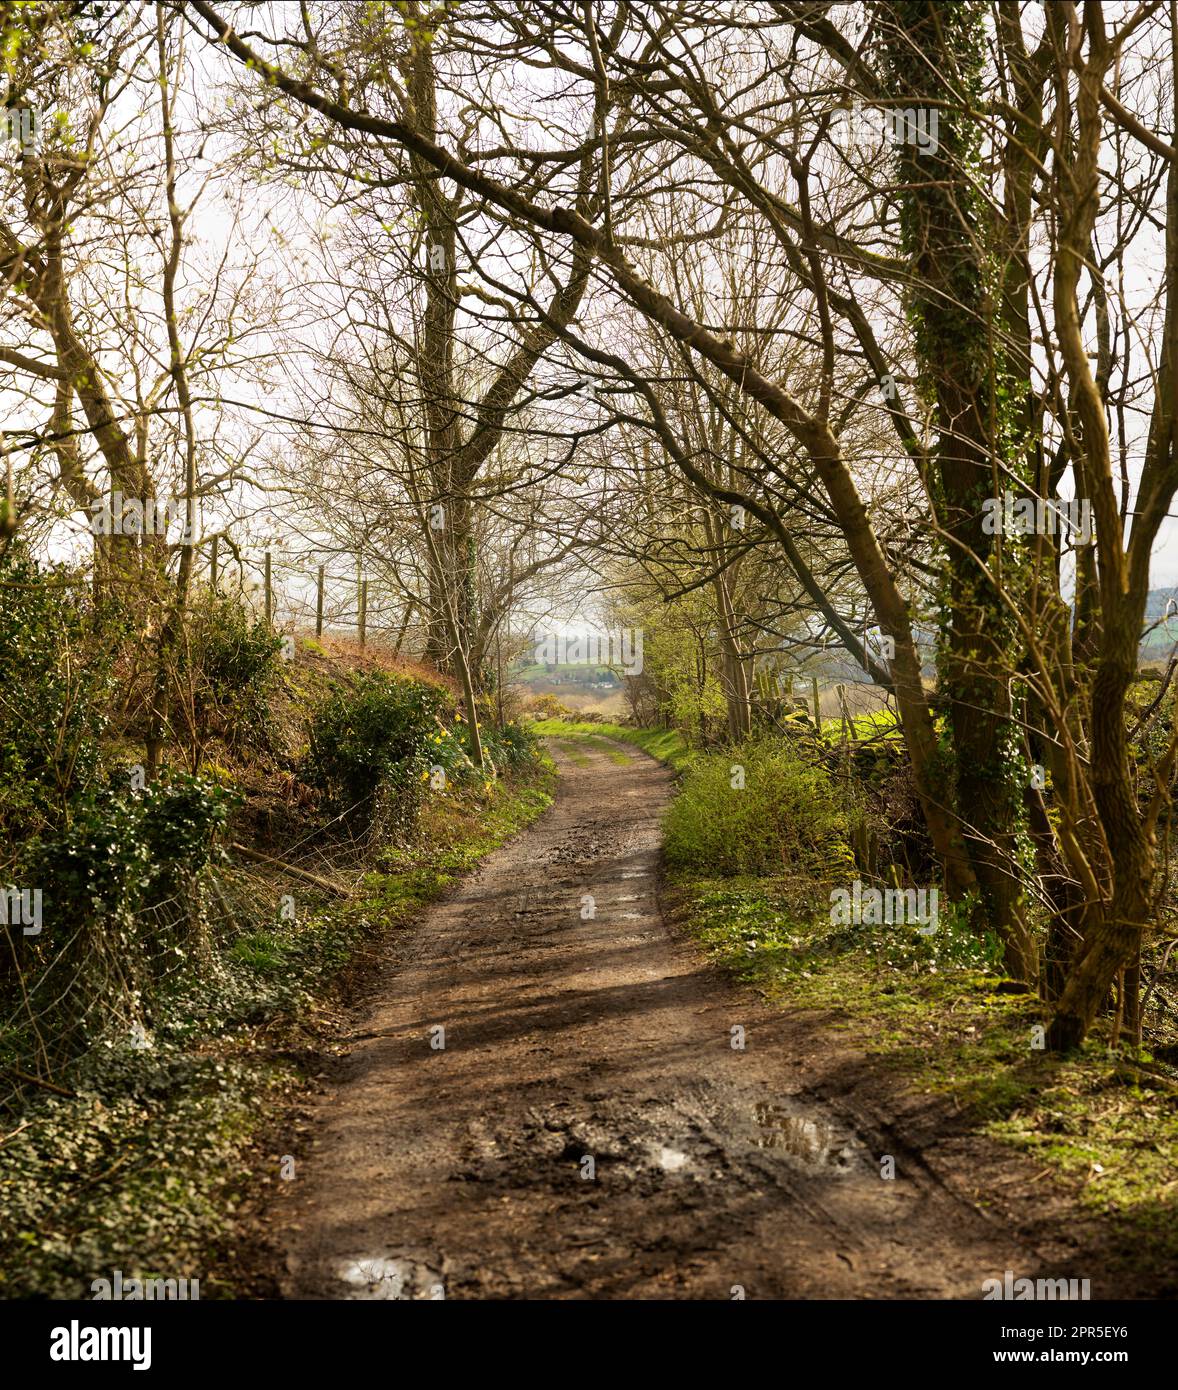 Une ruelle de campagne dans le Derbyshire Peak District au début du printemps. Marche à travers la campagne anglaise à mesure que la saison change. Banque D'Images